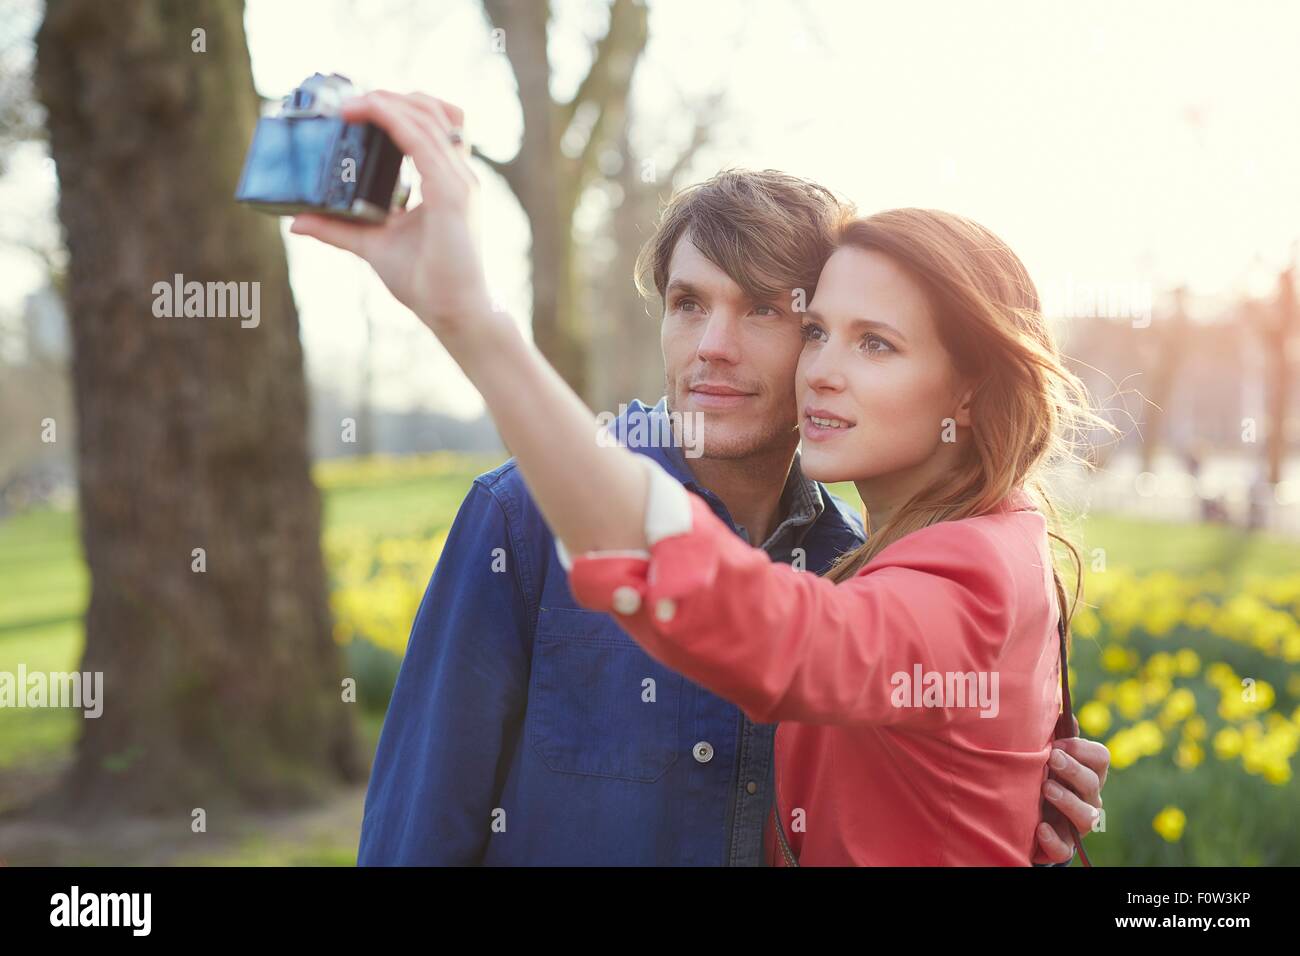 Giovane tenendo la fotocamera selfie in park, london, Regno Unito Foto Stock